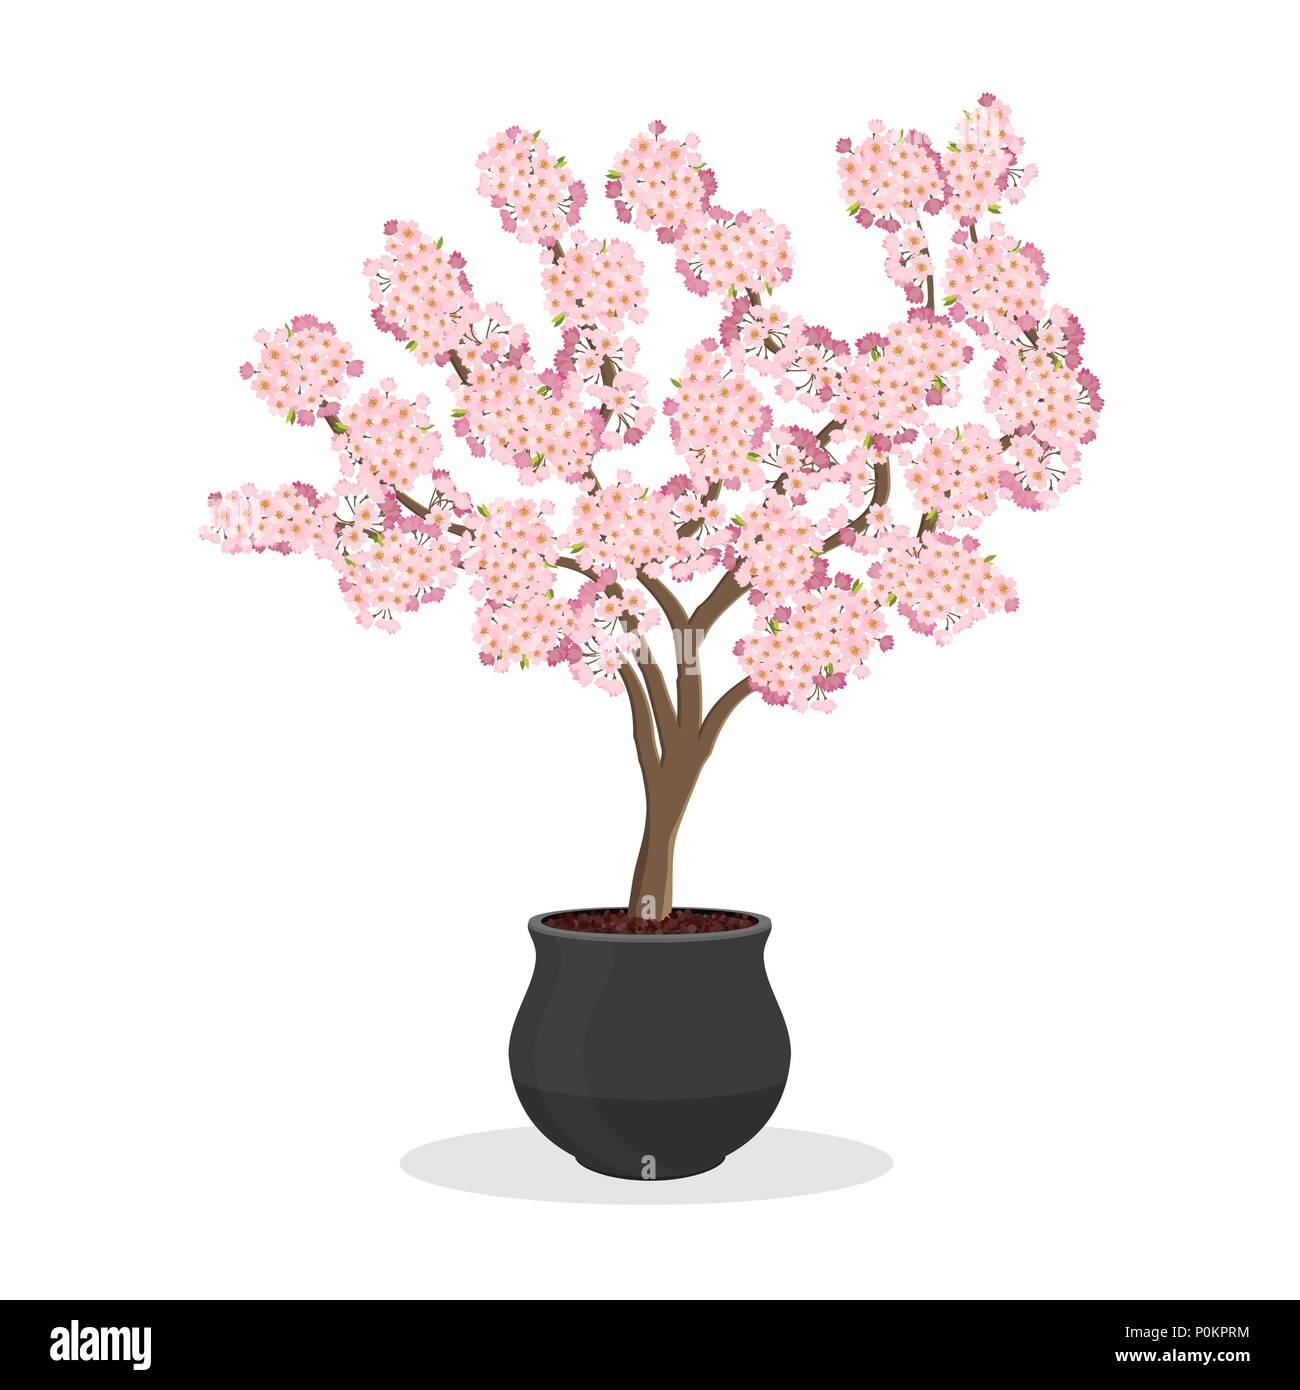 Wachsende Kirschen in einen Container. Kleine Kirschbaum in Blüte. Zwerg Frucht Baum im Blumentopf wachsen. Japanische sakura blühen. Auf weiß isoliert. Stock Vektor